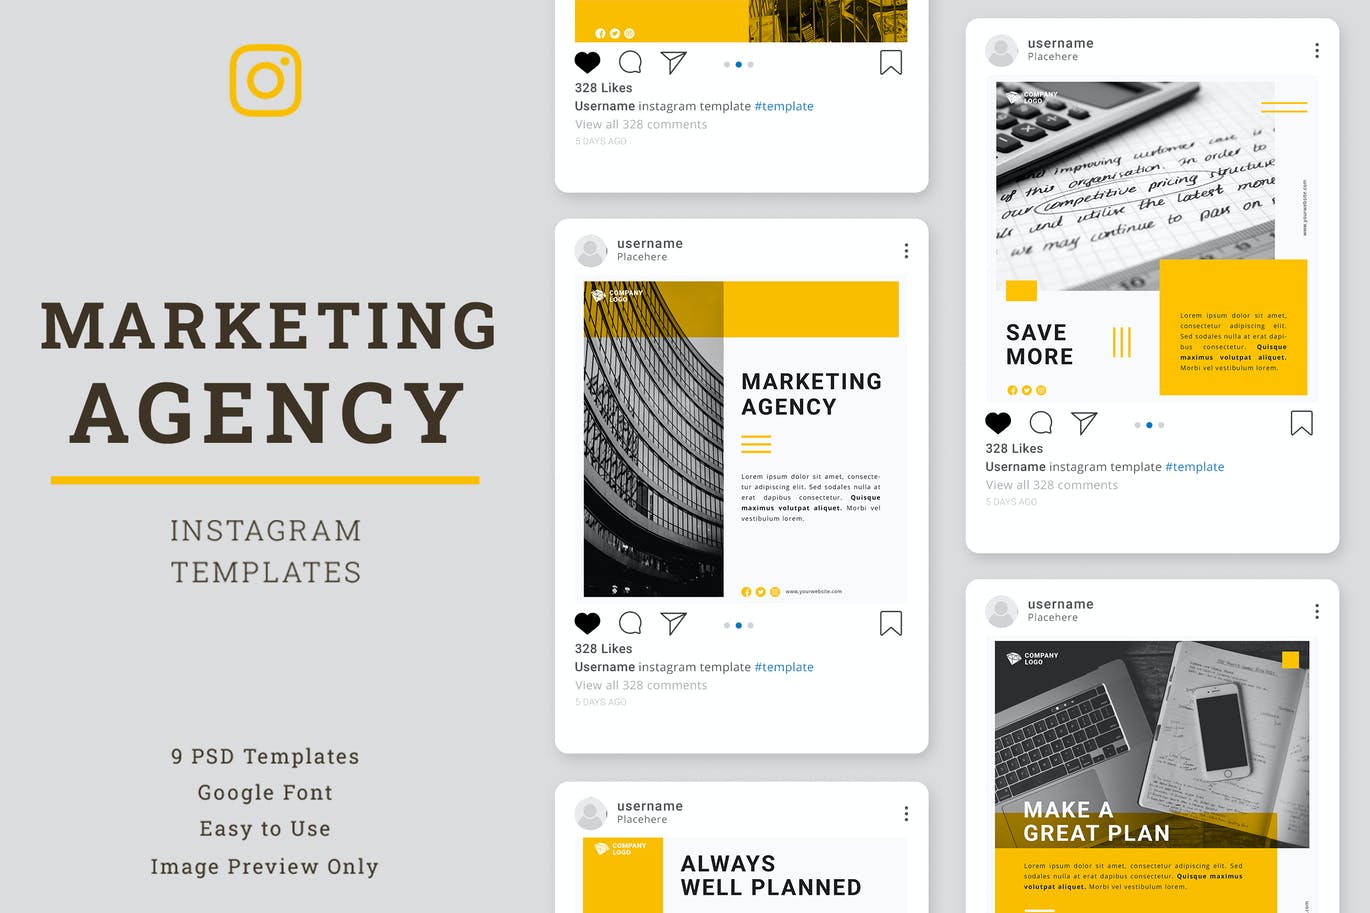 营销推广 机构 社交 媒体Instagram帖子设计模板 Marketing Agency Instagram Post template设计素材模板